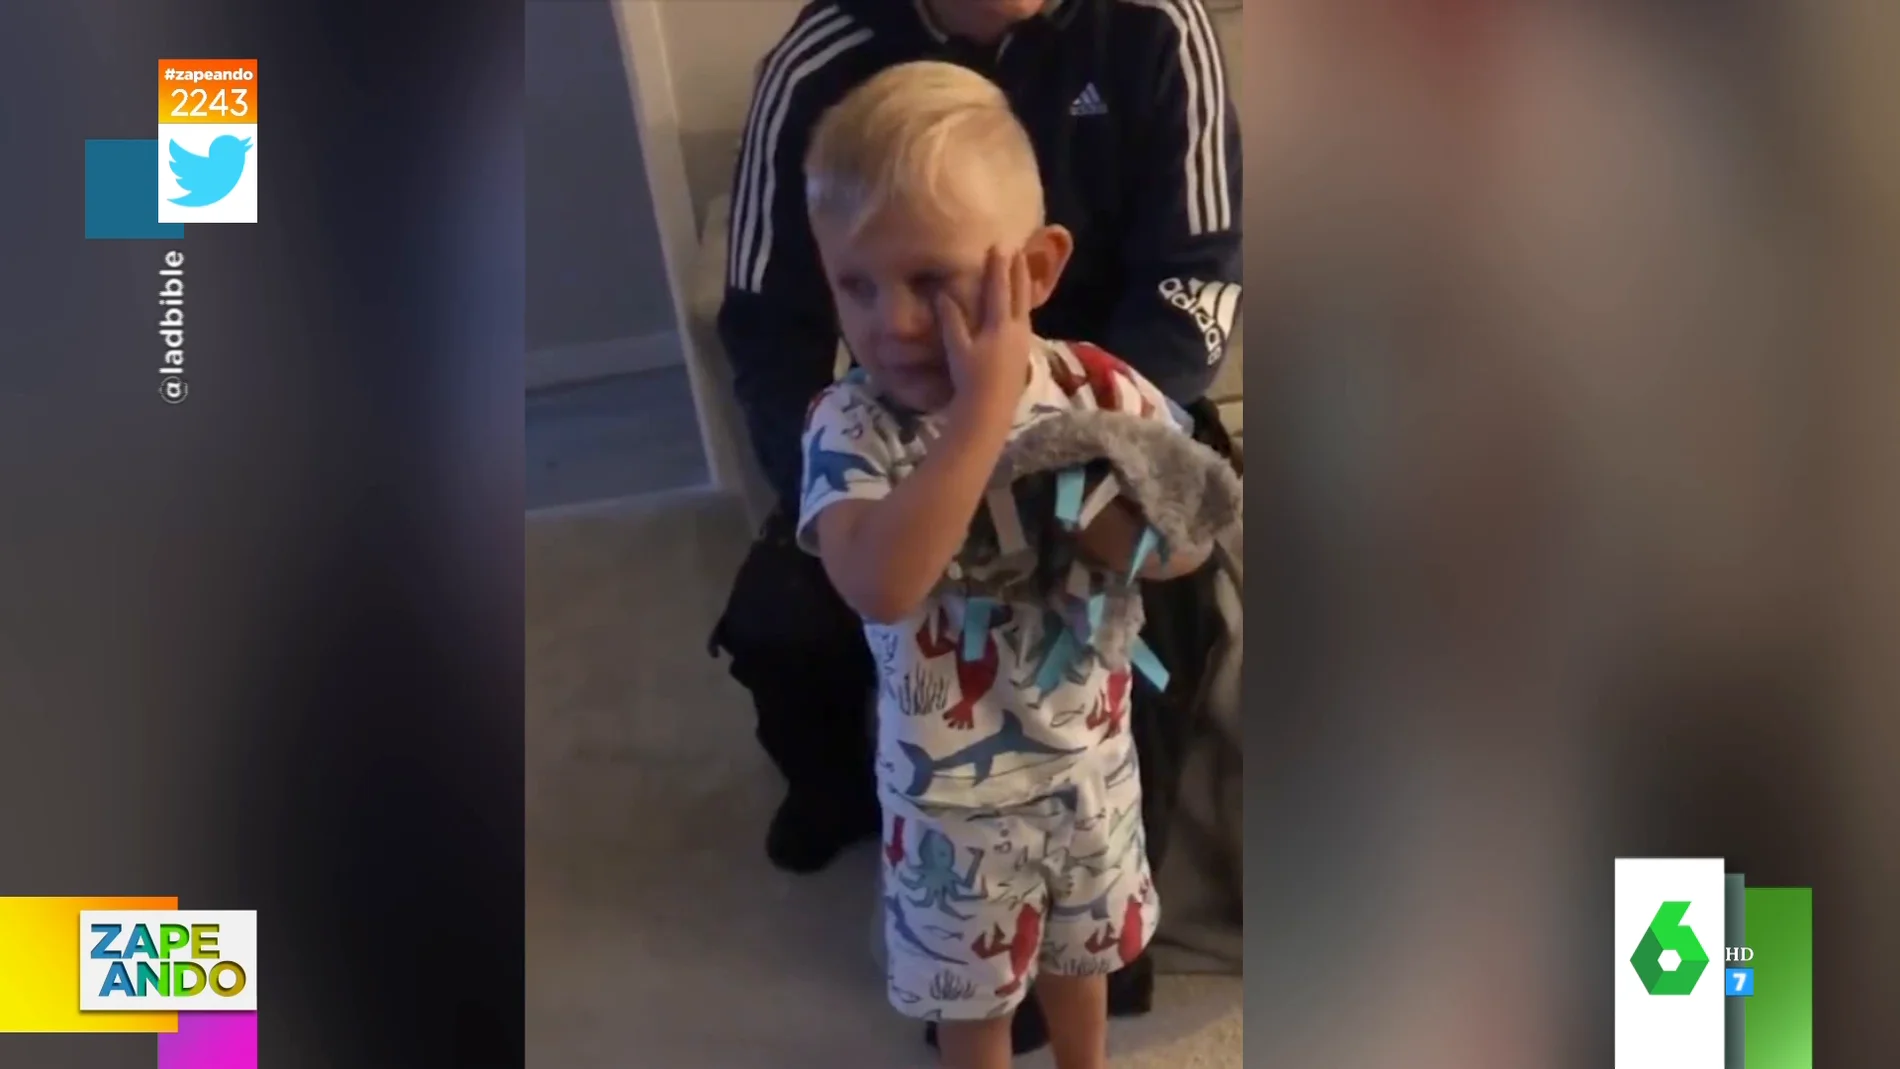 Las lágrimas de un niño al ver todos los regalos que tiene por su cumpleaños